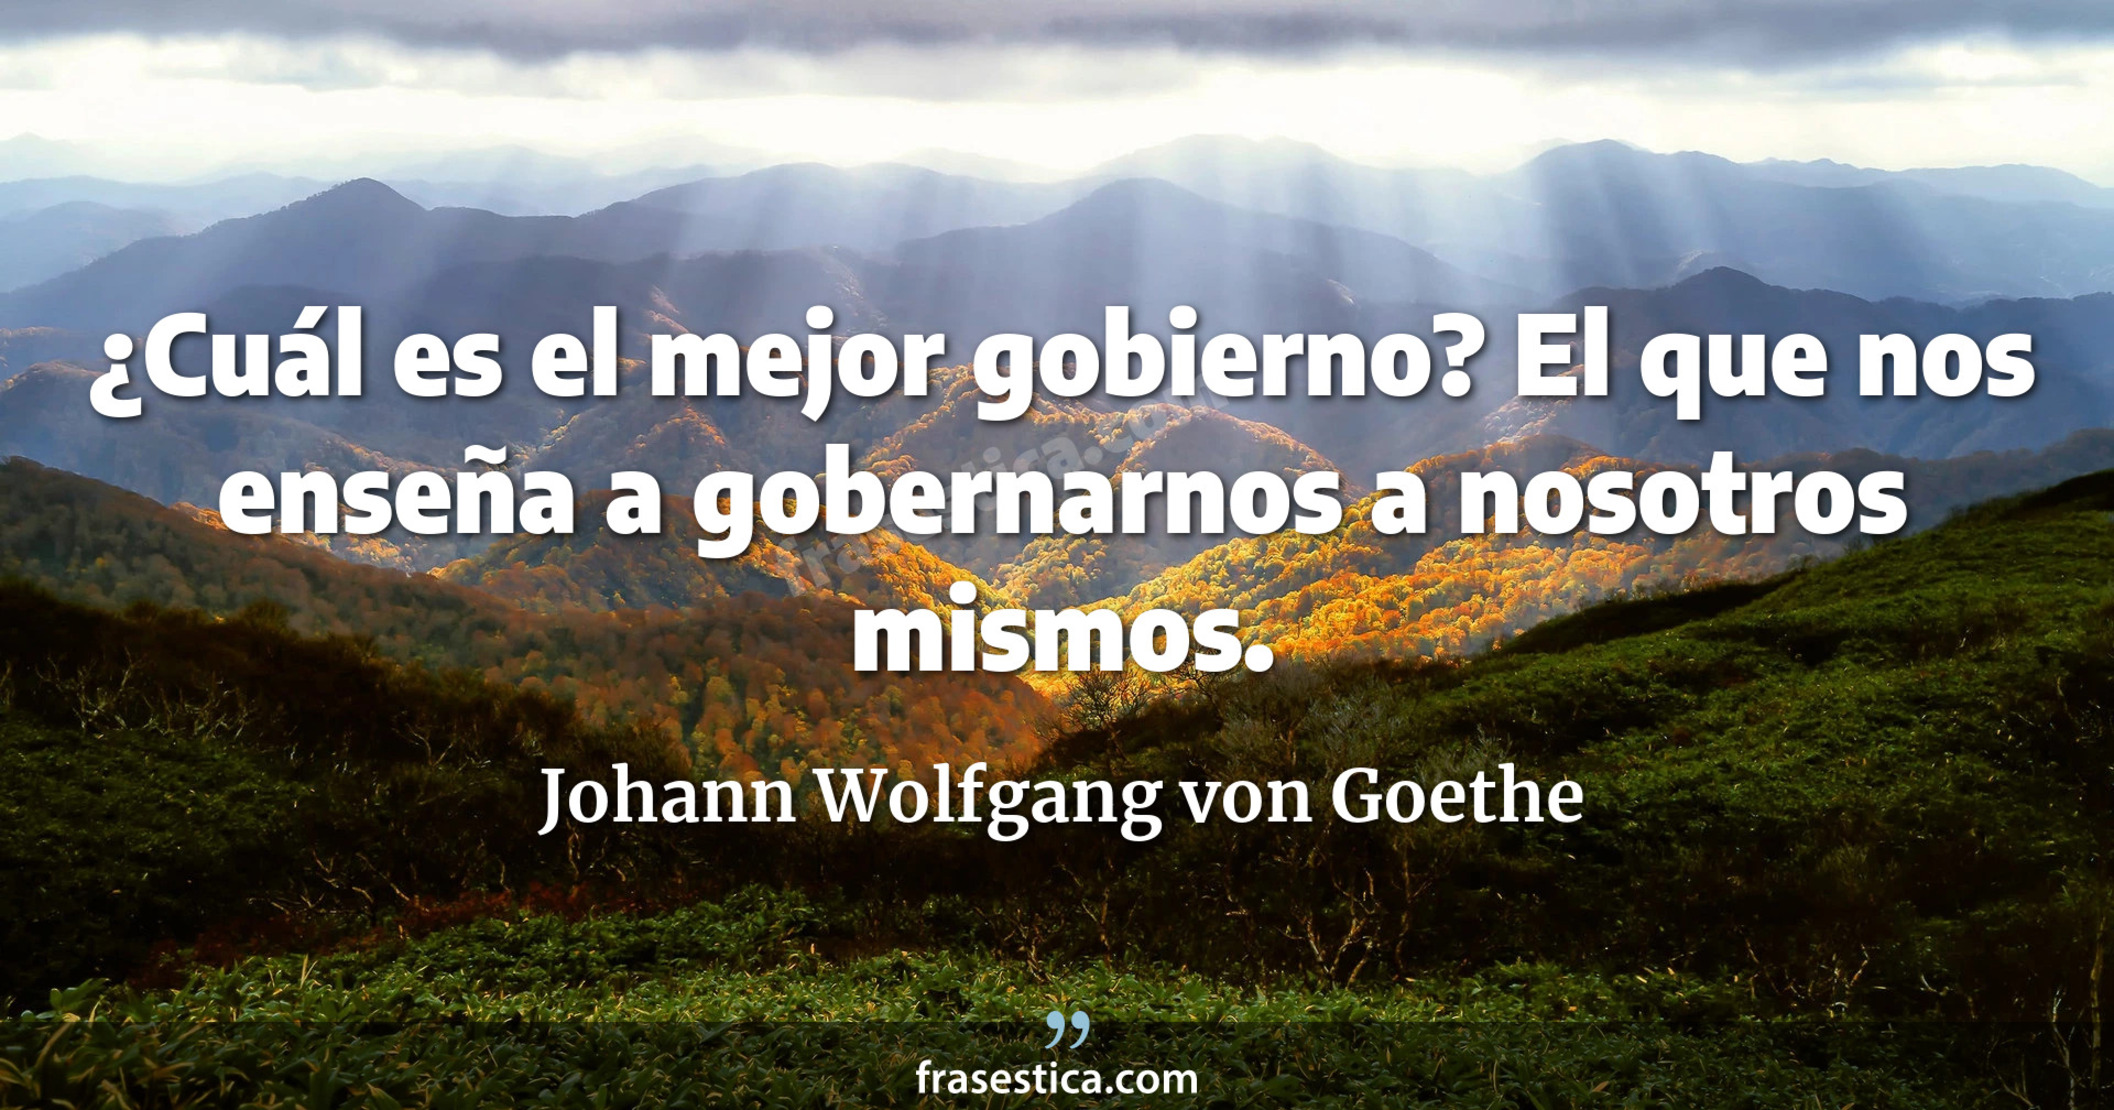 ¿Cuál es el mejor gobierno? El que nos enseña a gobernarnos a nosotros mismos. - Johann Wolfgang von Goethe